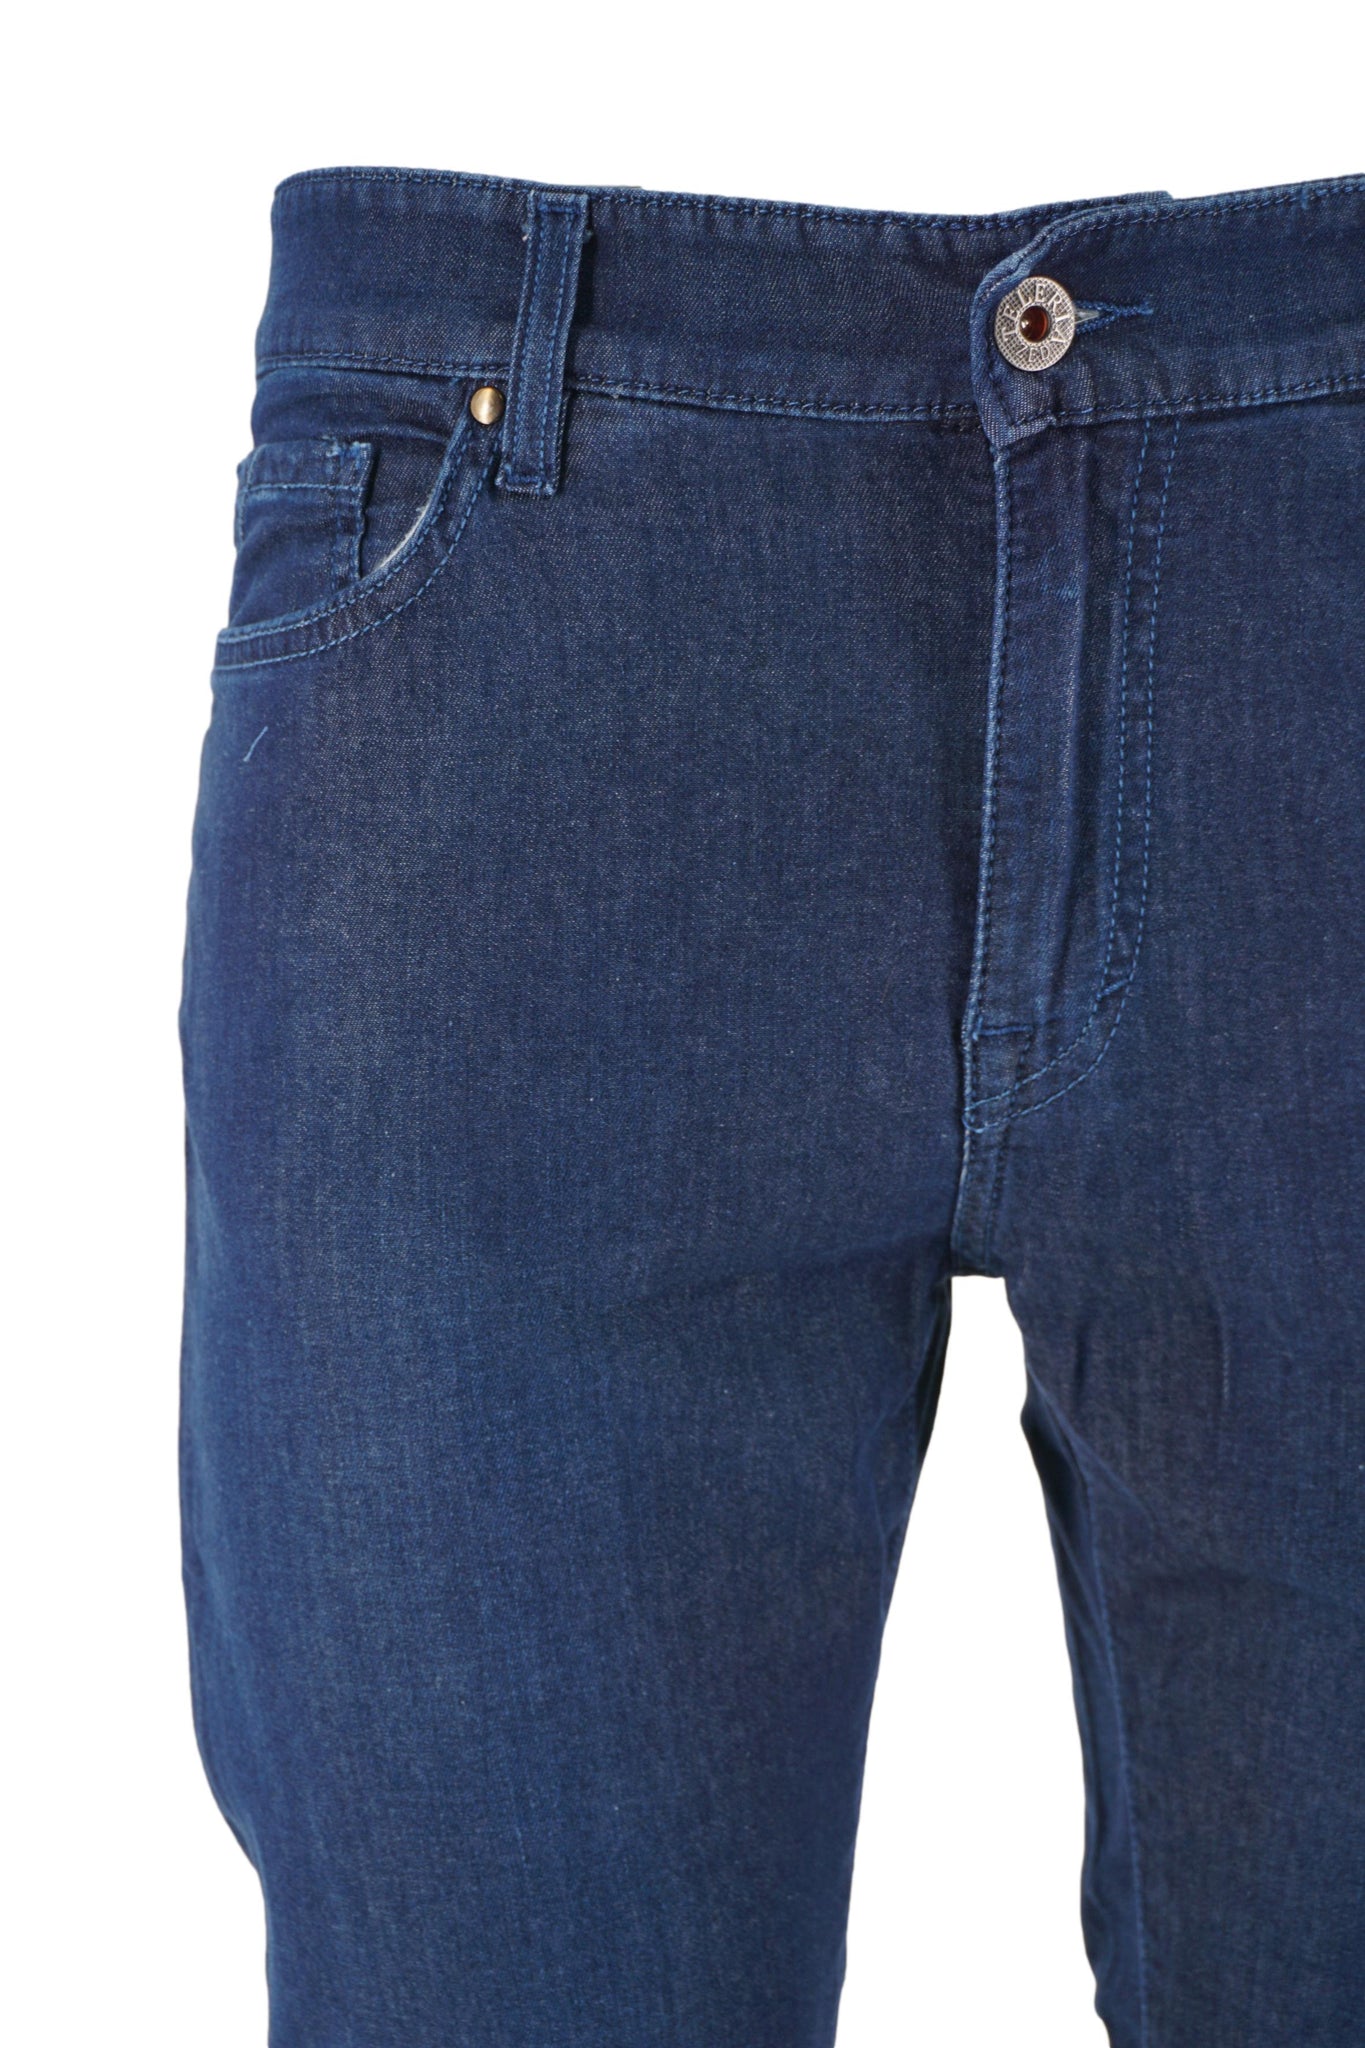 Jeans Leggero Lavaggio Scuro / Jeans - Ideal Moda